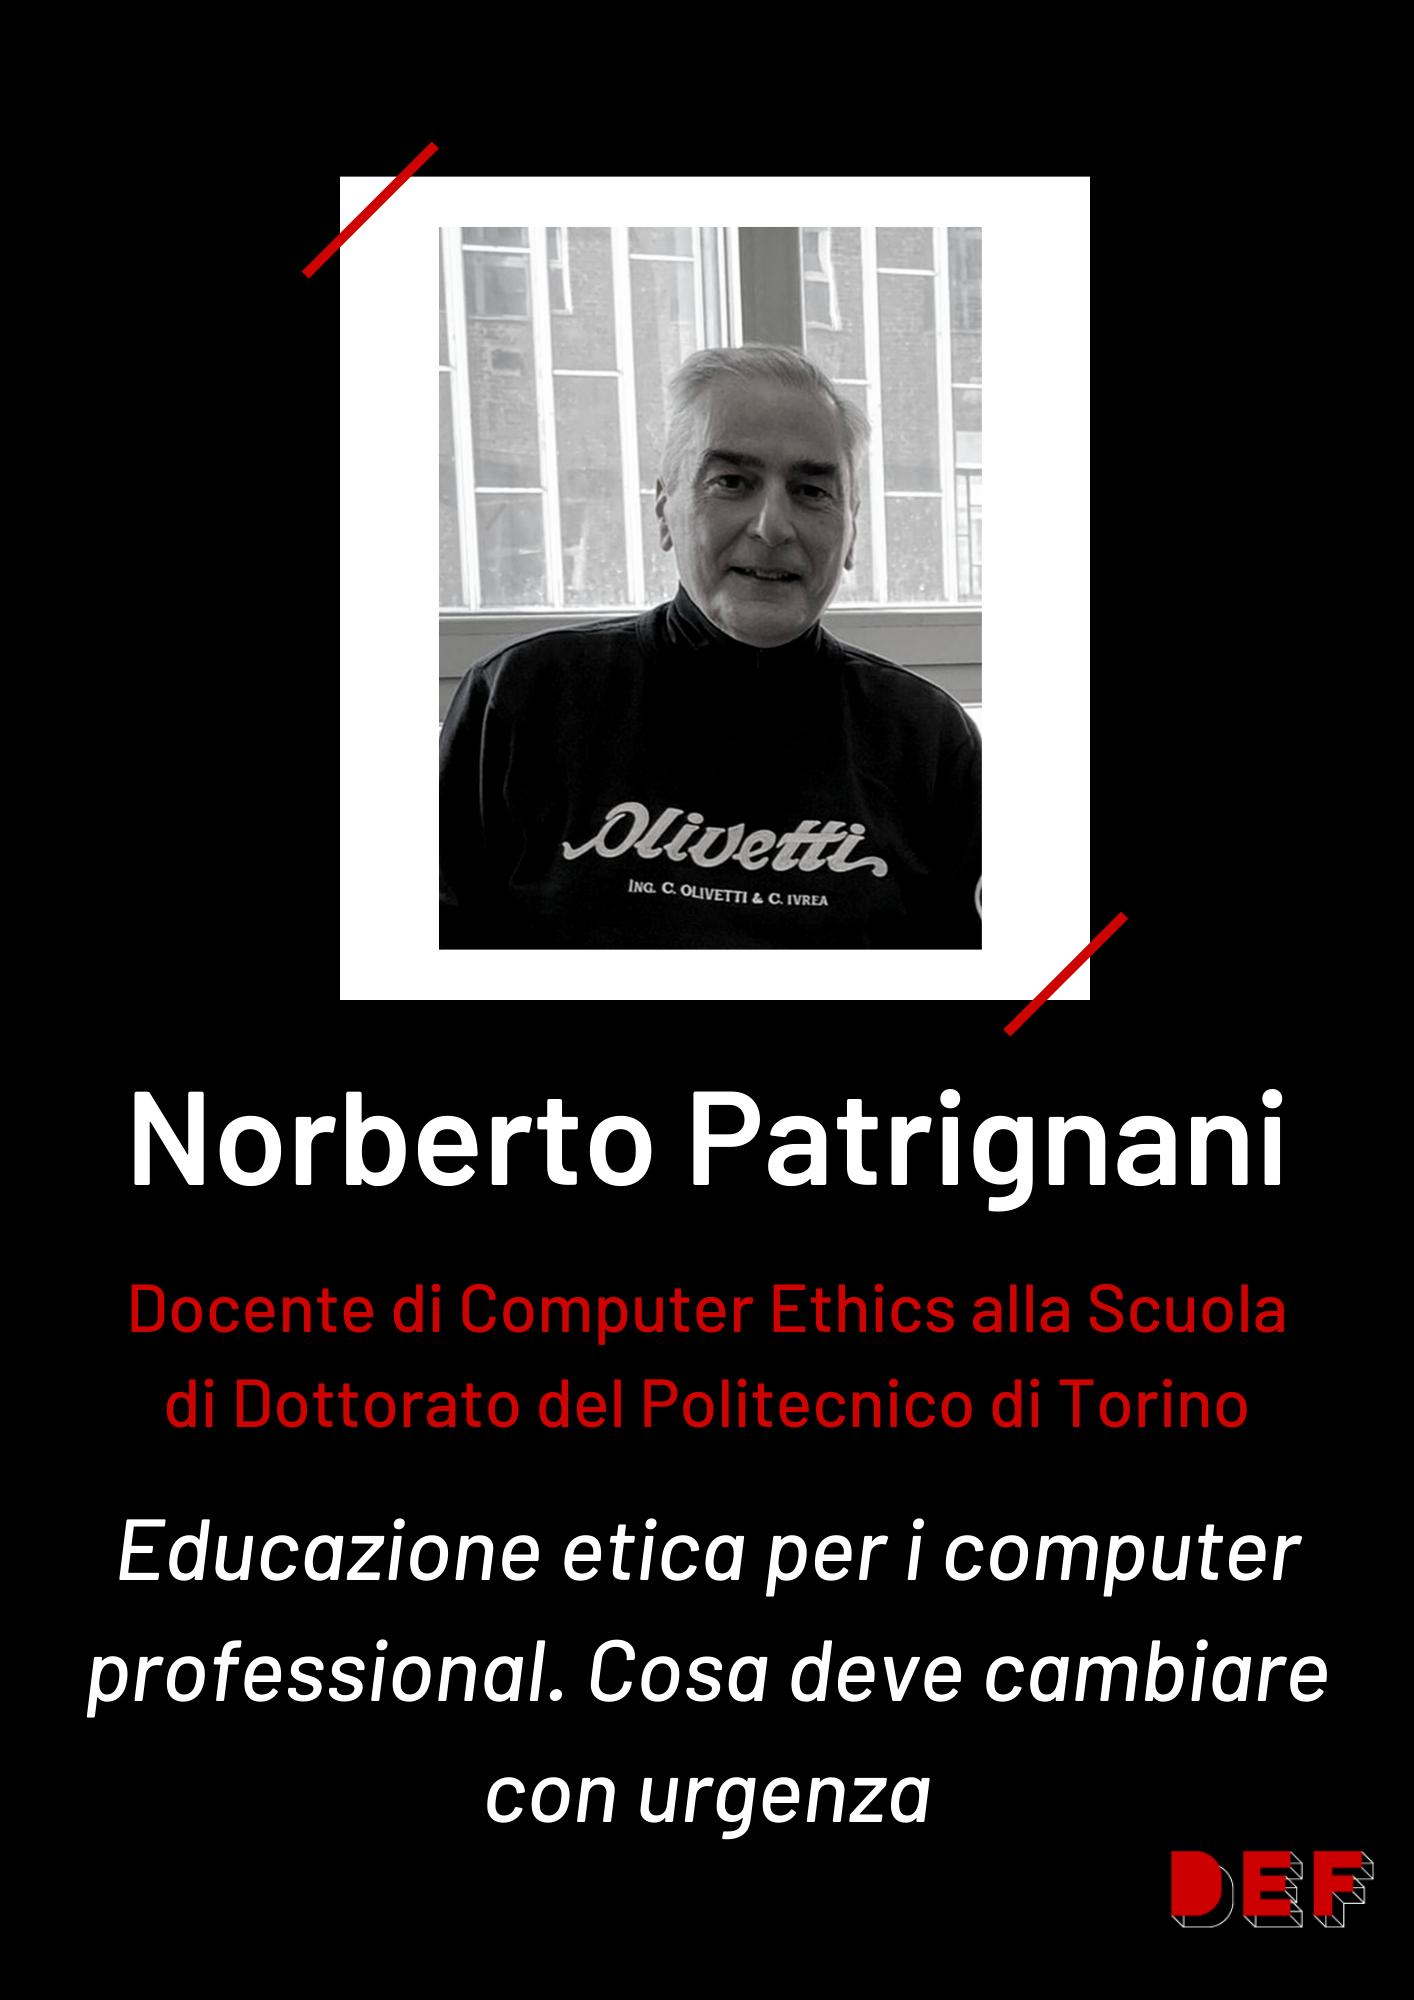 card Norberto Patrignani - DEF23